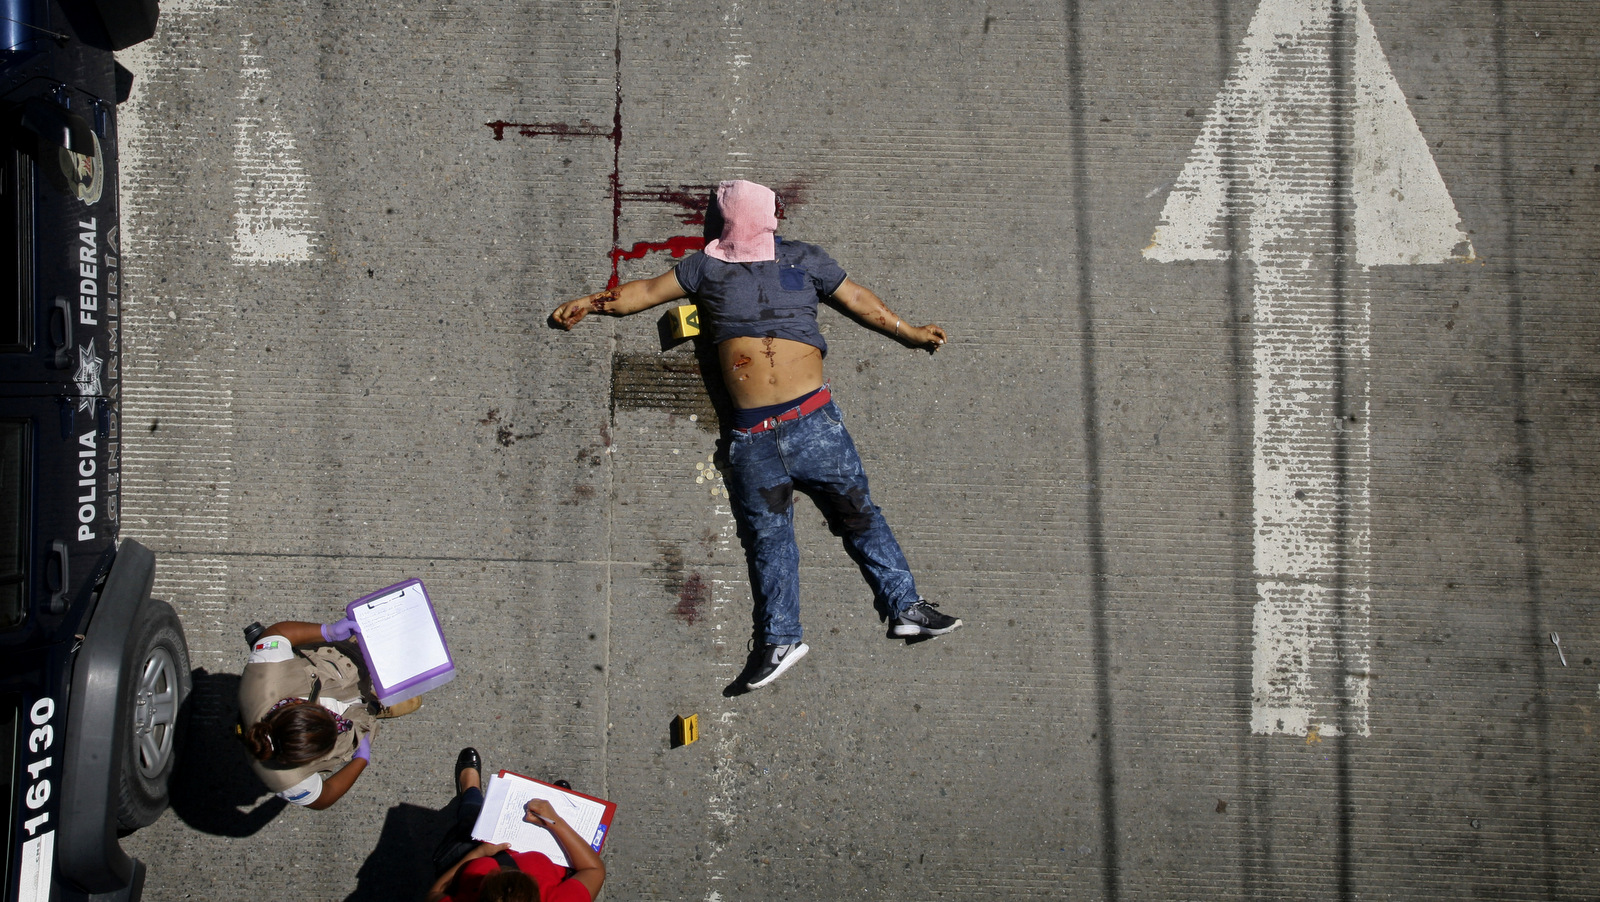 Investigadores policiales toman notas junto al cuerpo de un hombre baleado a plena luz del día en Acapulco, México, el 13 de agosto de 2017. (AP / Bernandino Hernández)